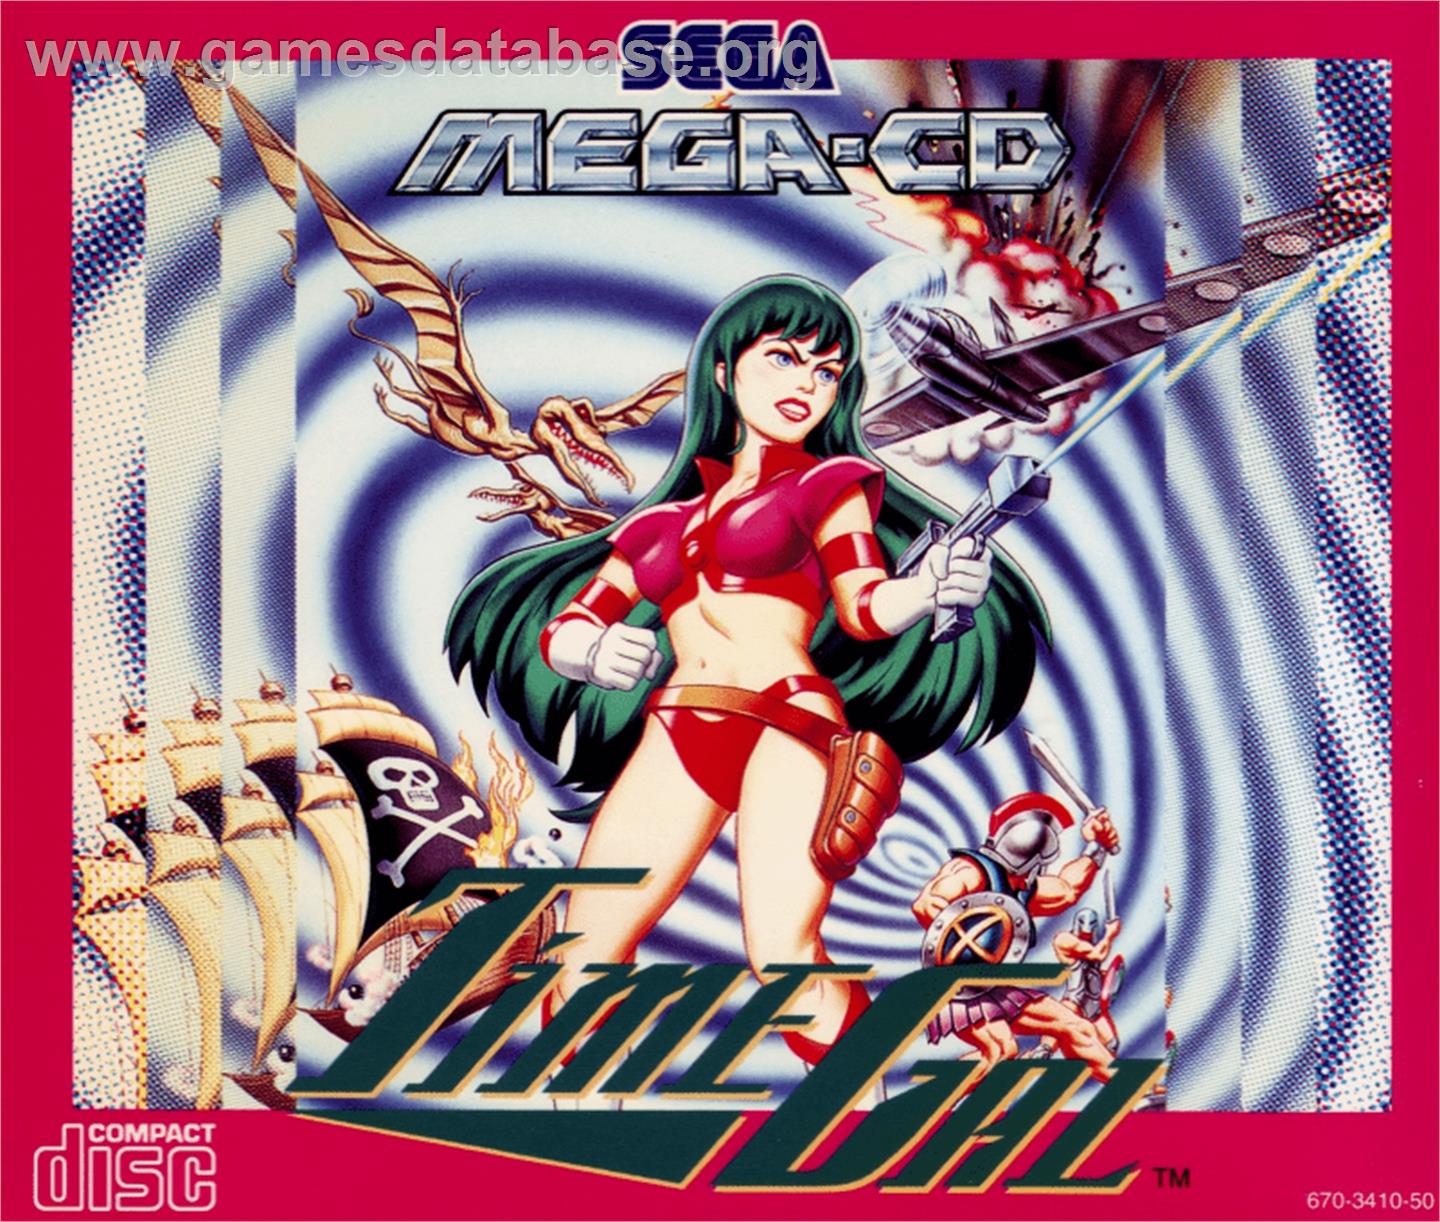 Time Gal - Sega CD - Artwork - Box